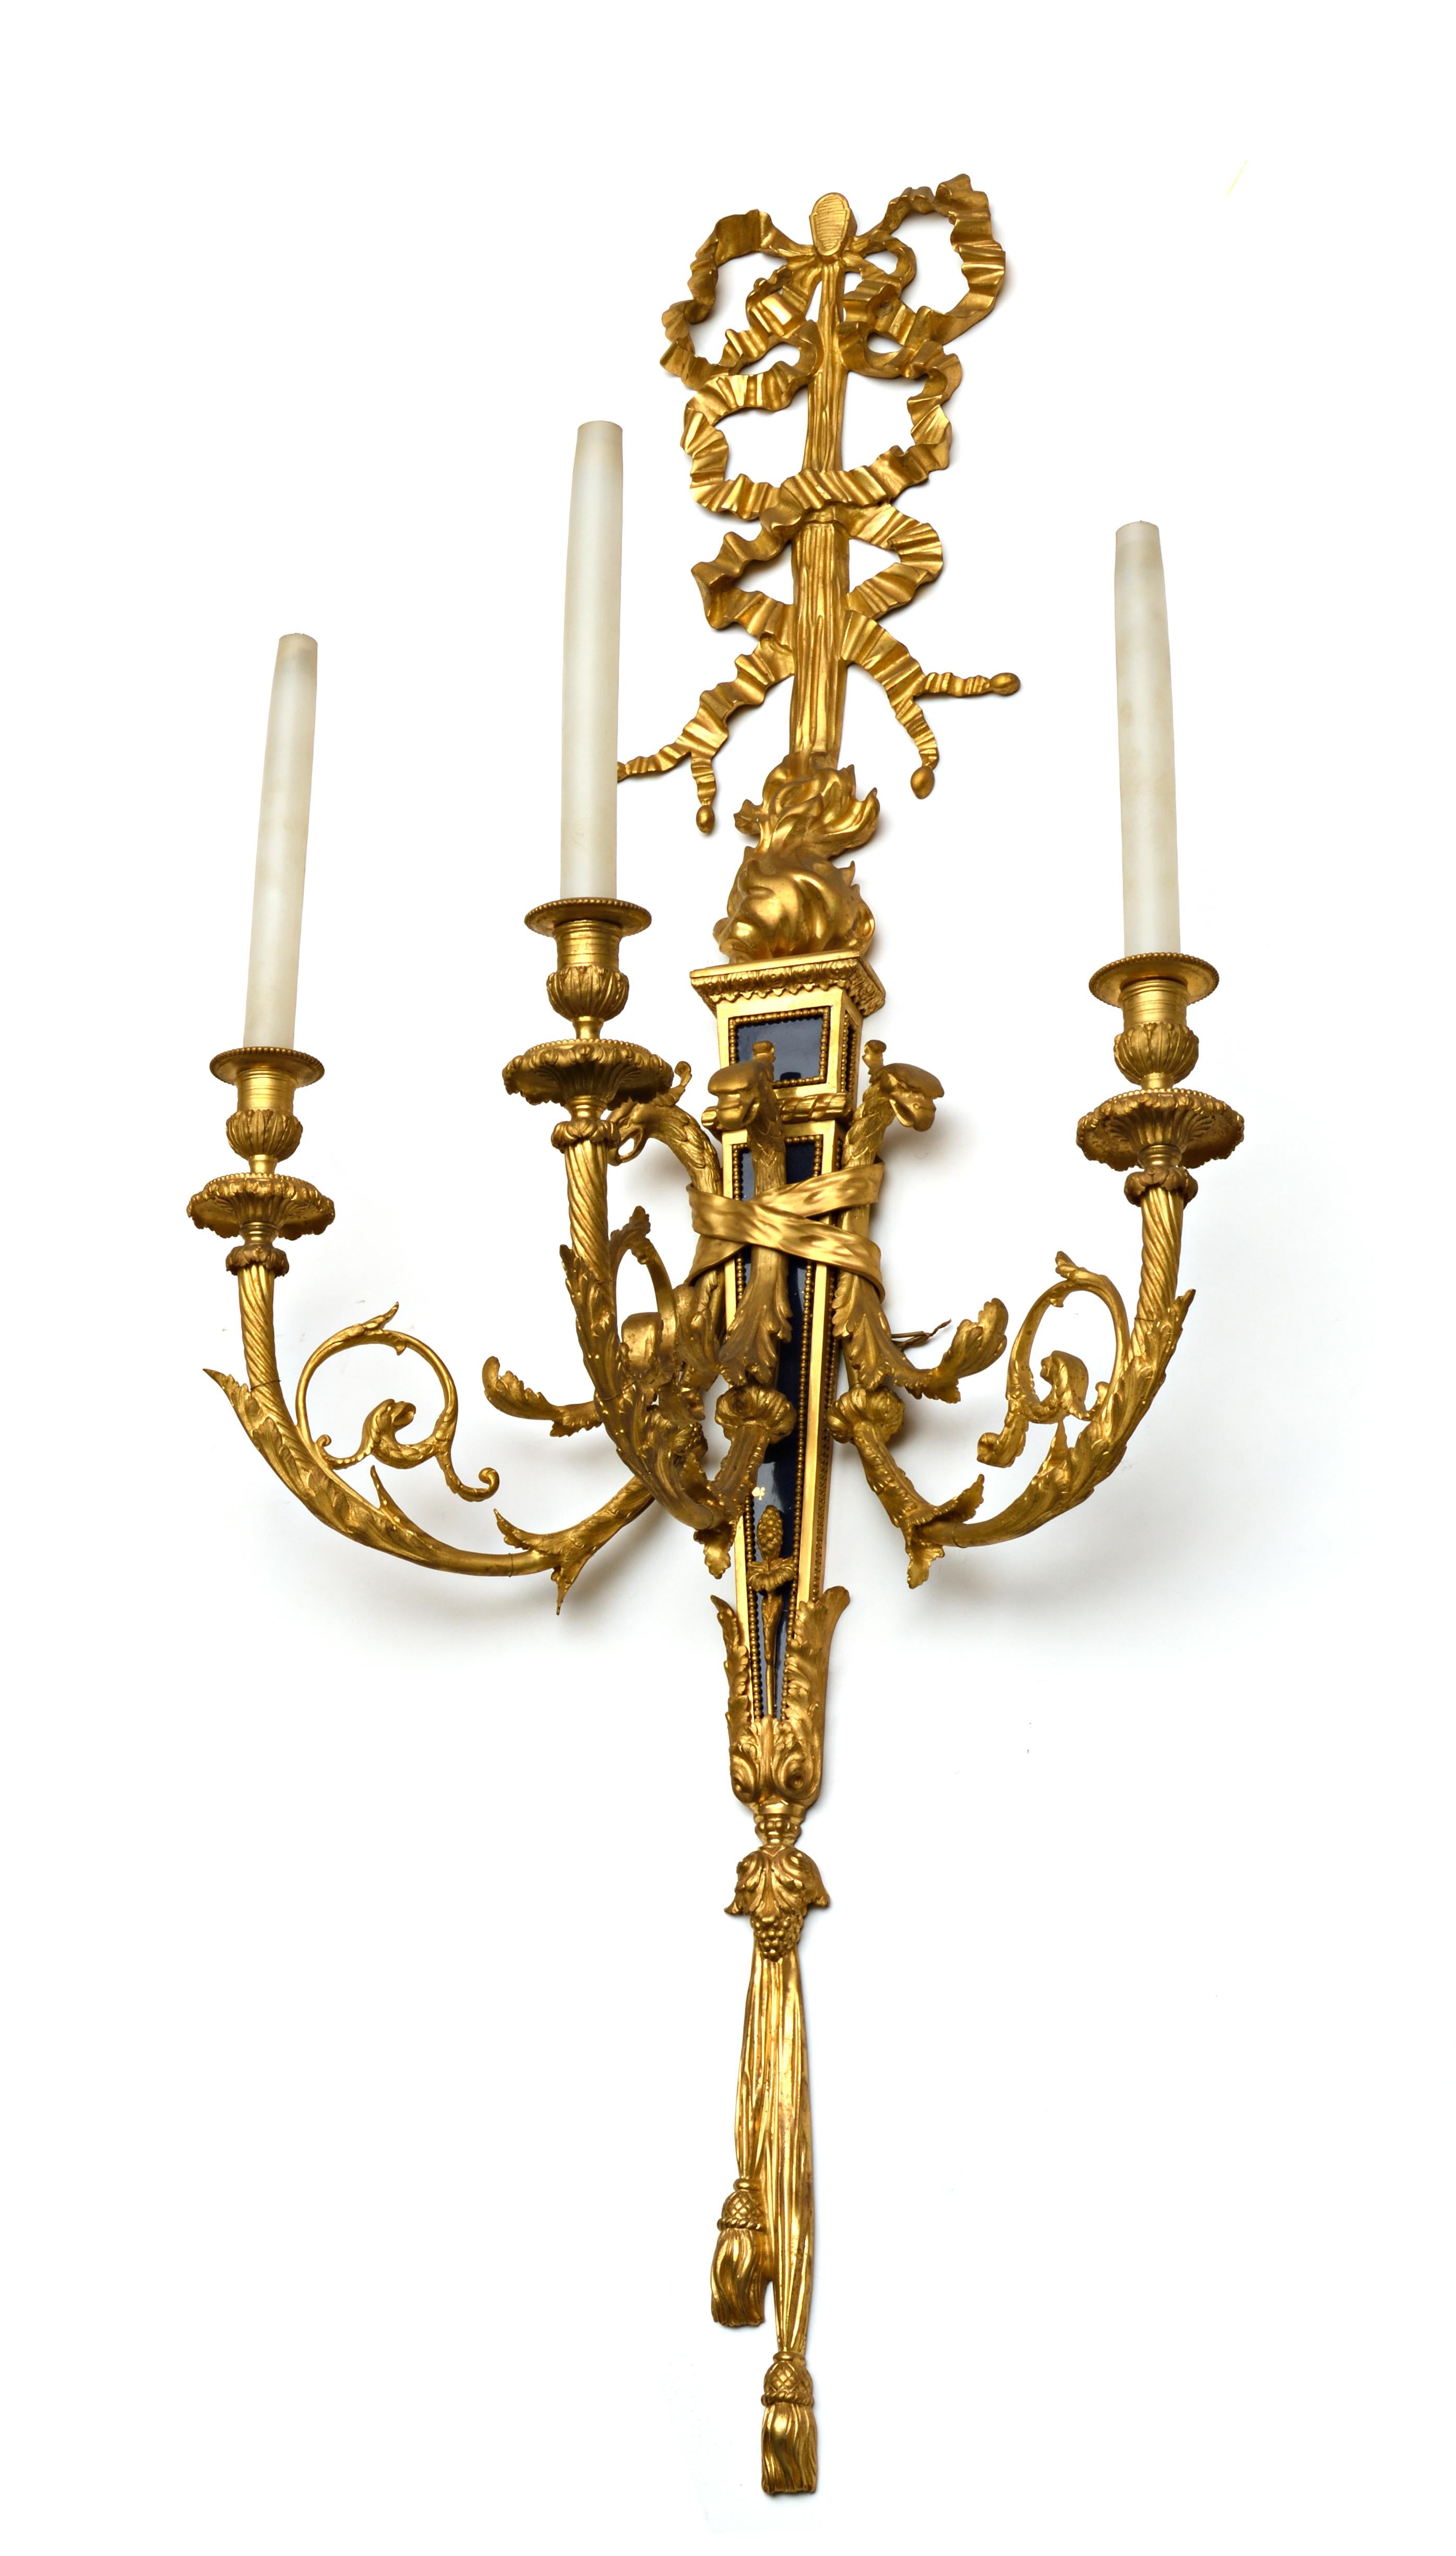 Ein fein gegossenes Paar vergoldeter Bronze- und Blaustahllampen im Louis-XVI-Stil.
Die Qualität des Bronzegusses ist von höchster Pariser Qualität. 
Normen der damaligen Zeit